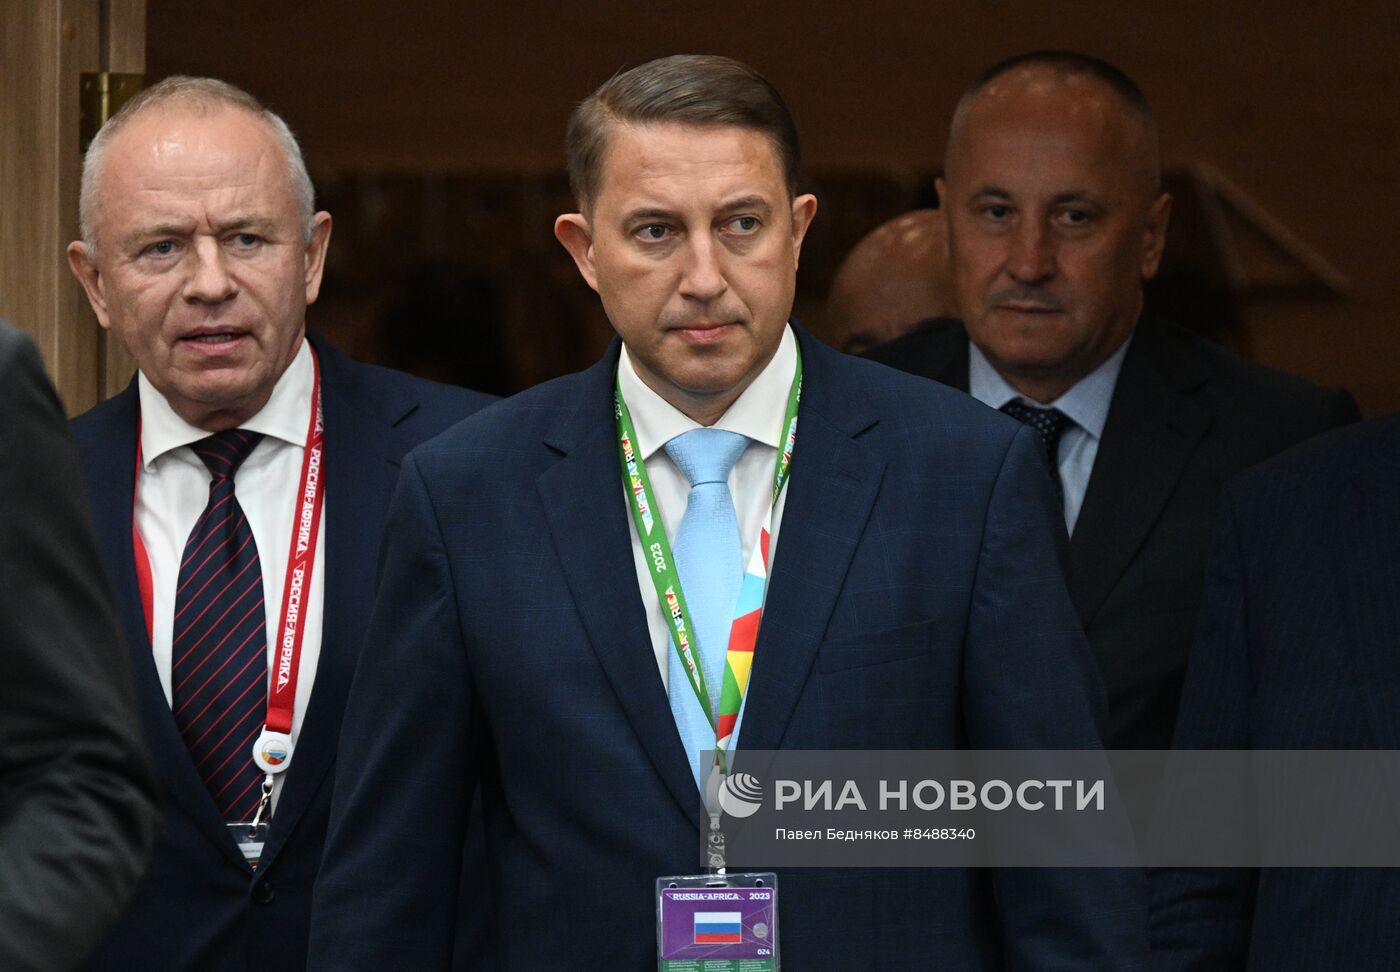 Встреча президента РФ В. Путина и президента ЦАР Ф. А. Туадеры